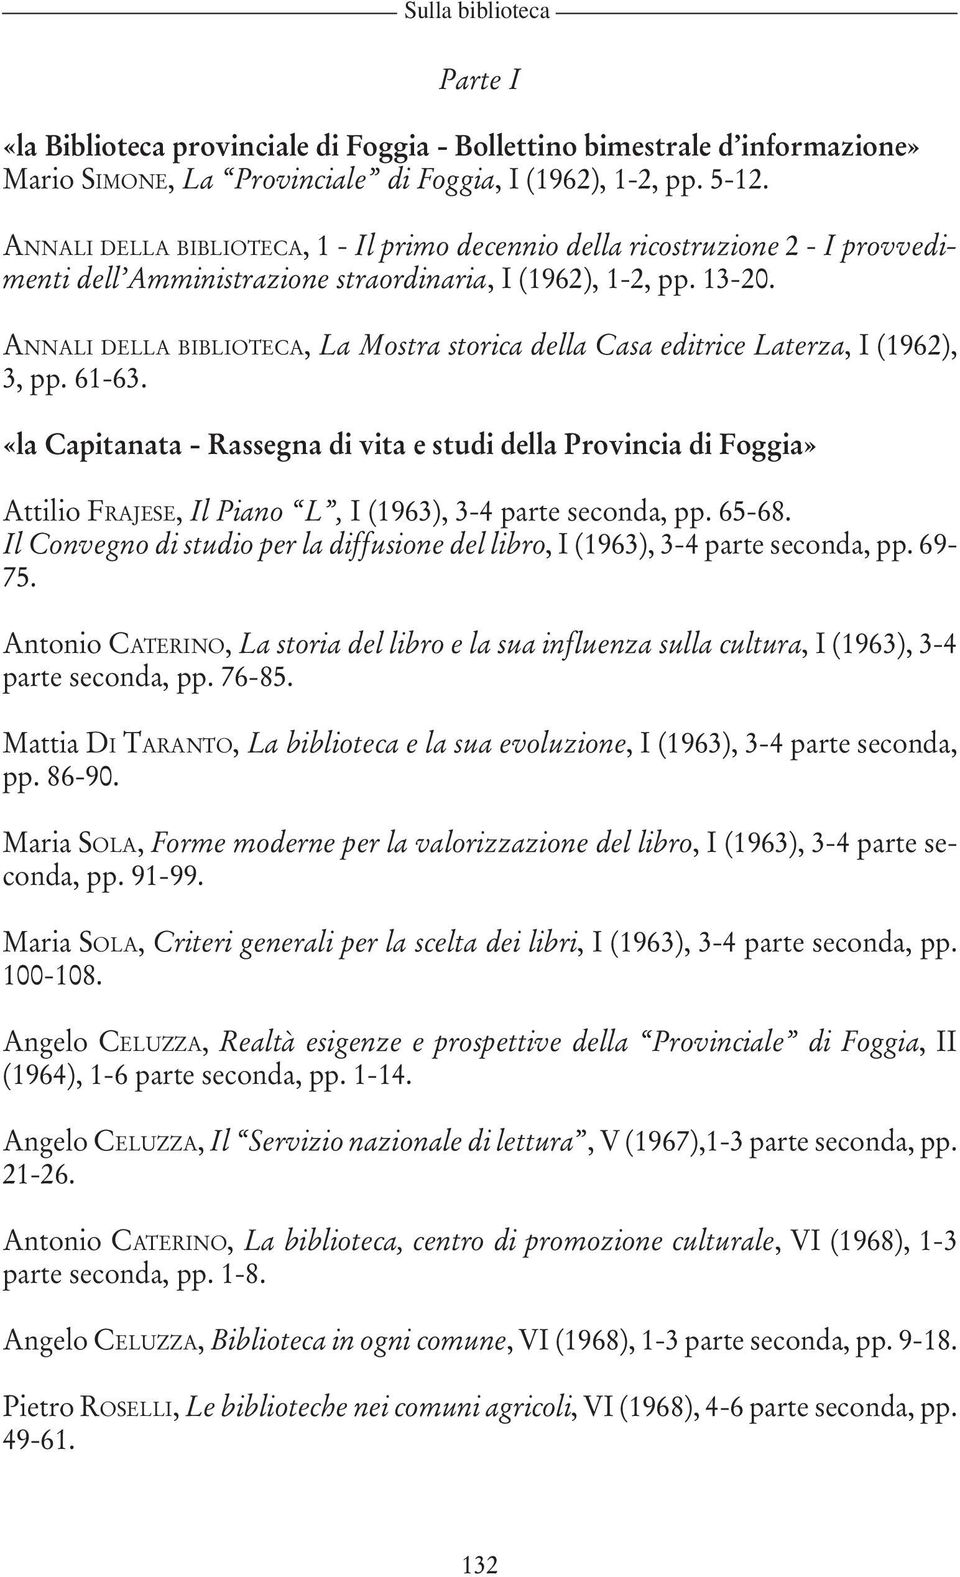 ANNALI DELLA BIBLIOTECA, La Mostra storica della Casa editrice Laterza, I (1962), 3, pp. 61-63.